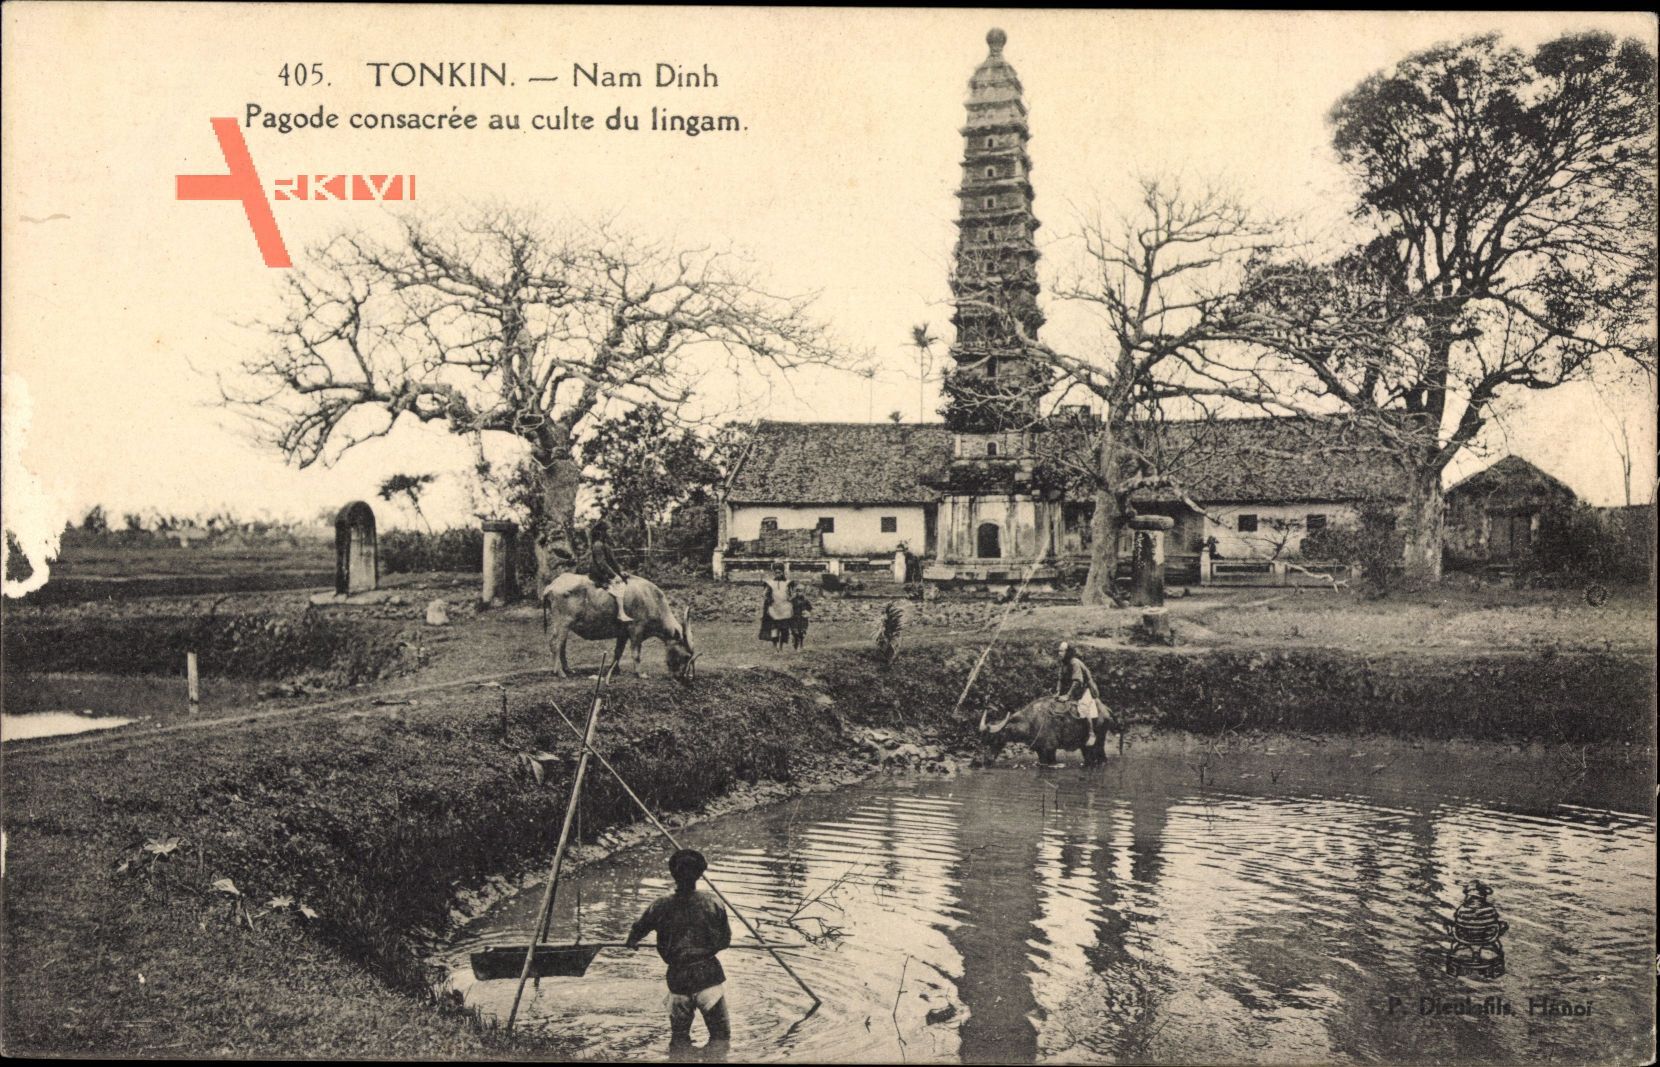 Tonkin Vietnam, Nam Dinh, Pagode consacree au culte du lingam